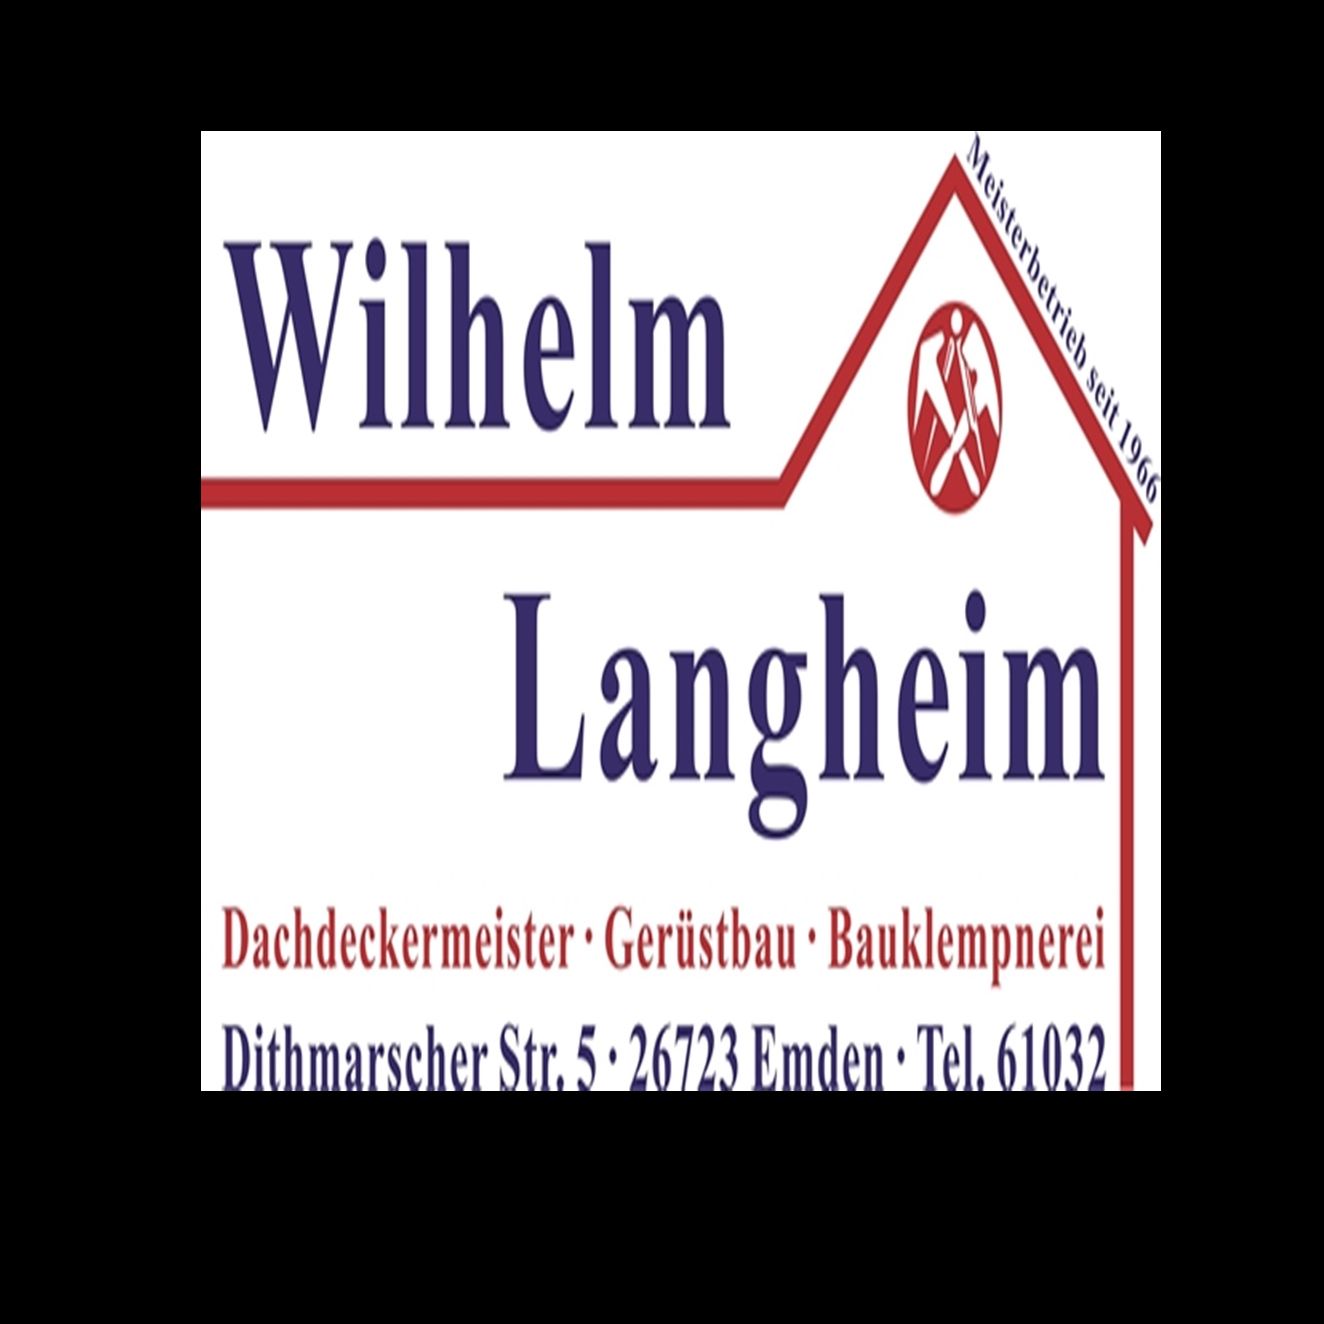 Wilhelm Langheim GmbH & Co. KG Jobs